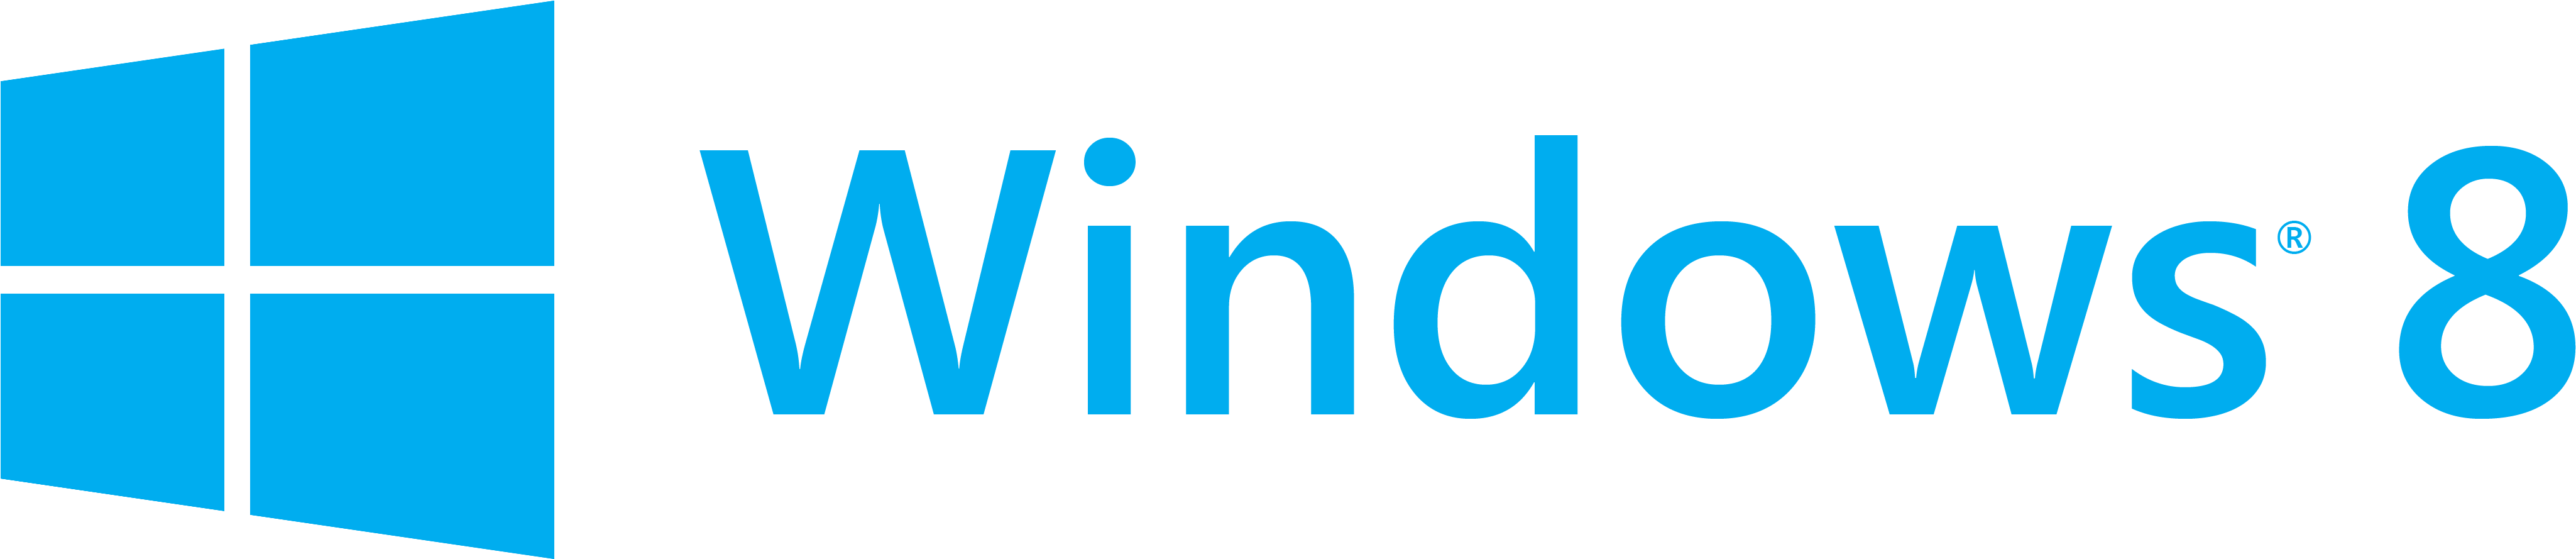 Windows8 Logo PNG